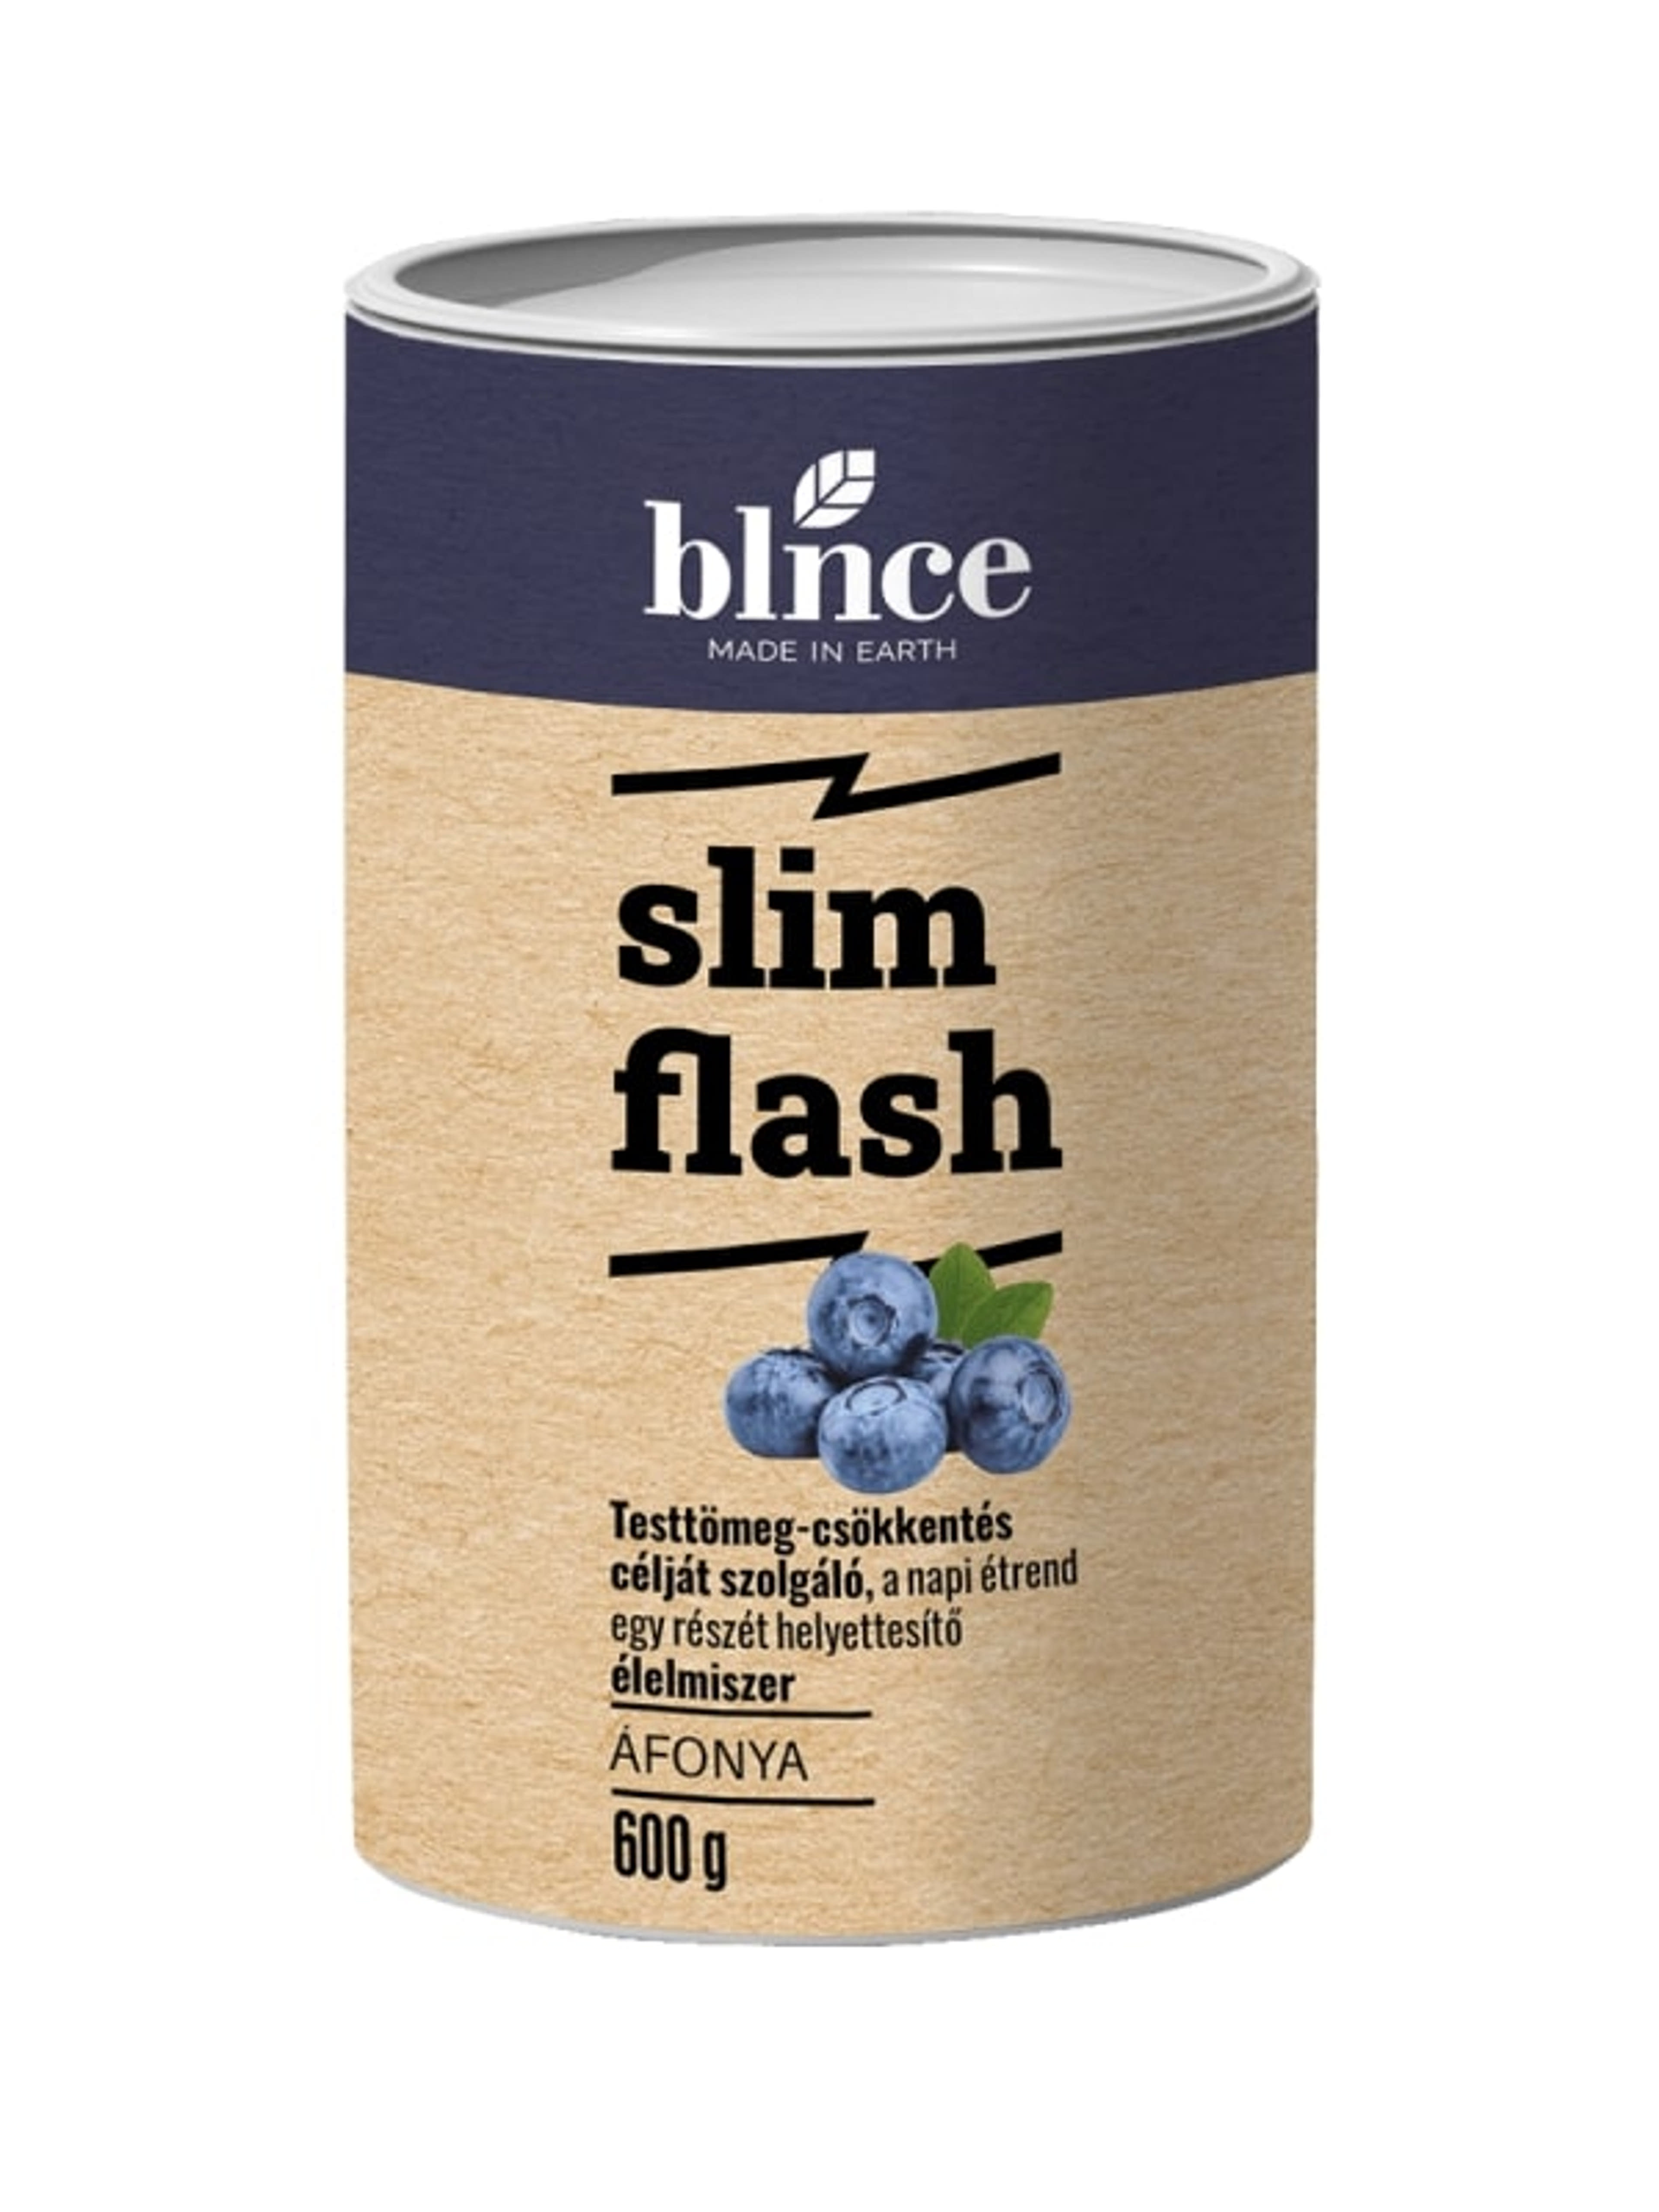 Blnce Active Slim Flash fogyókúrás italpor, áfonyás - 600 g-1